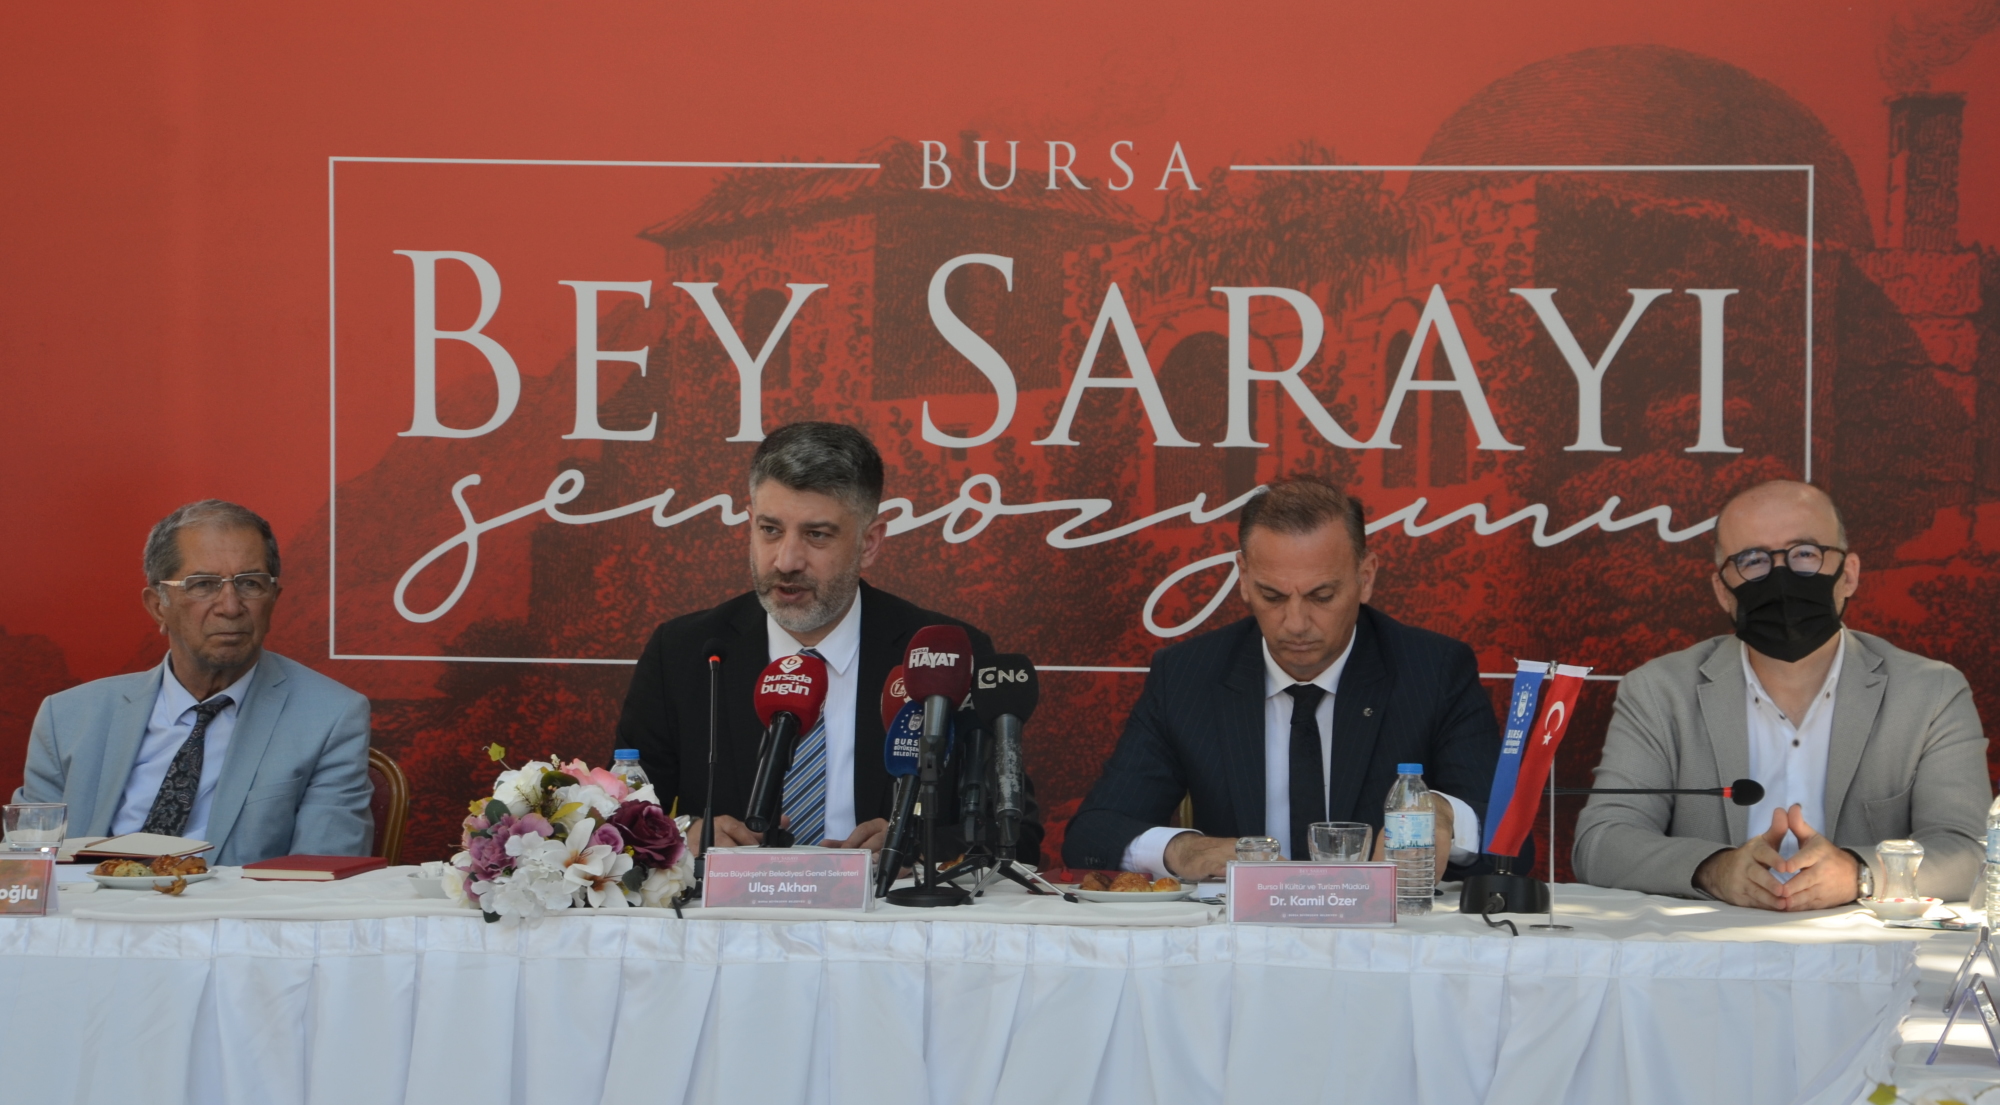  Bursa Bey Sarayı Sempozyumu Başladı